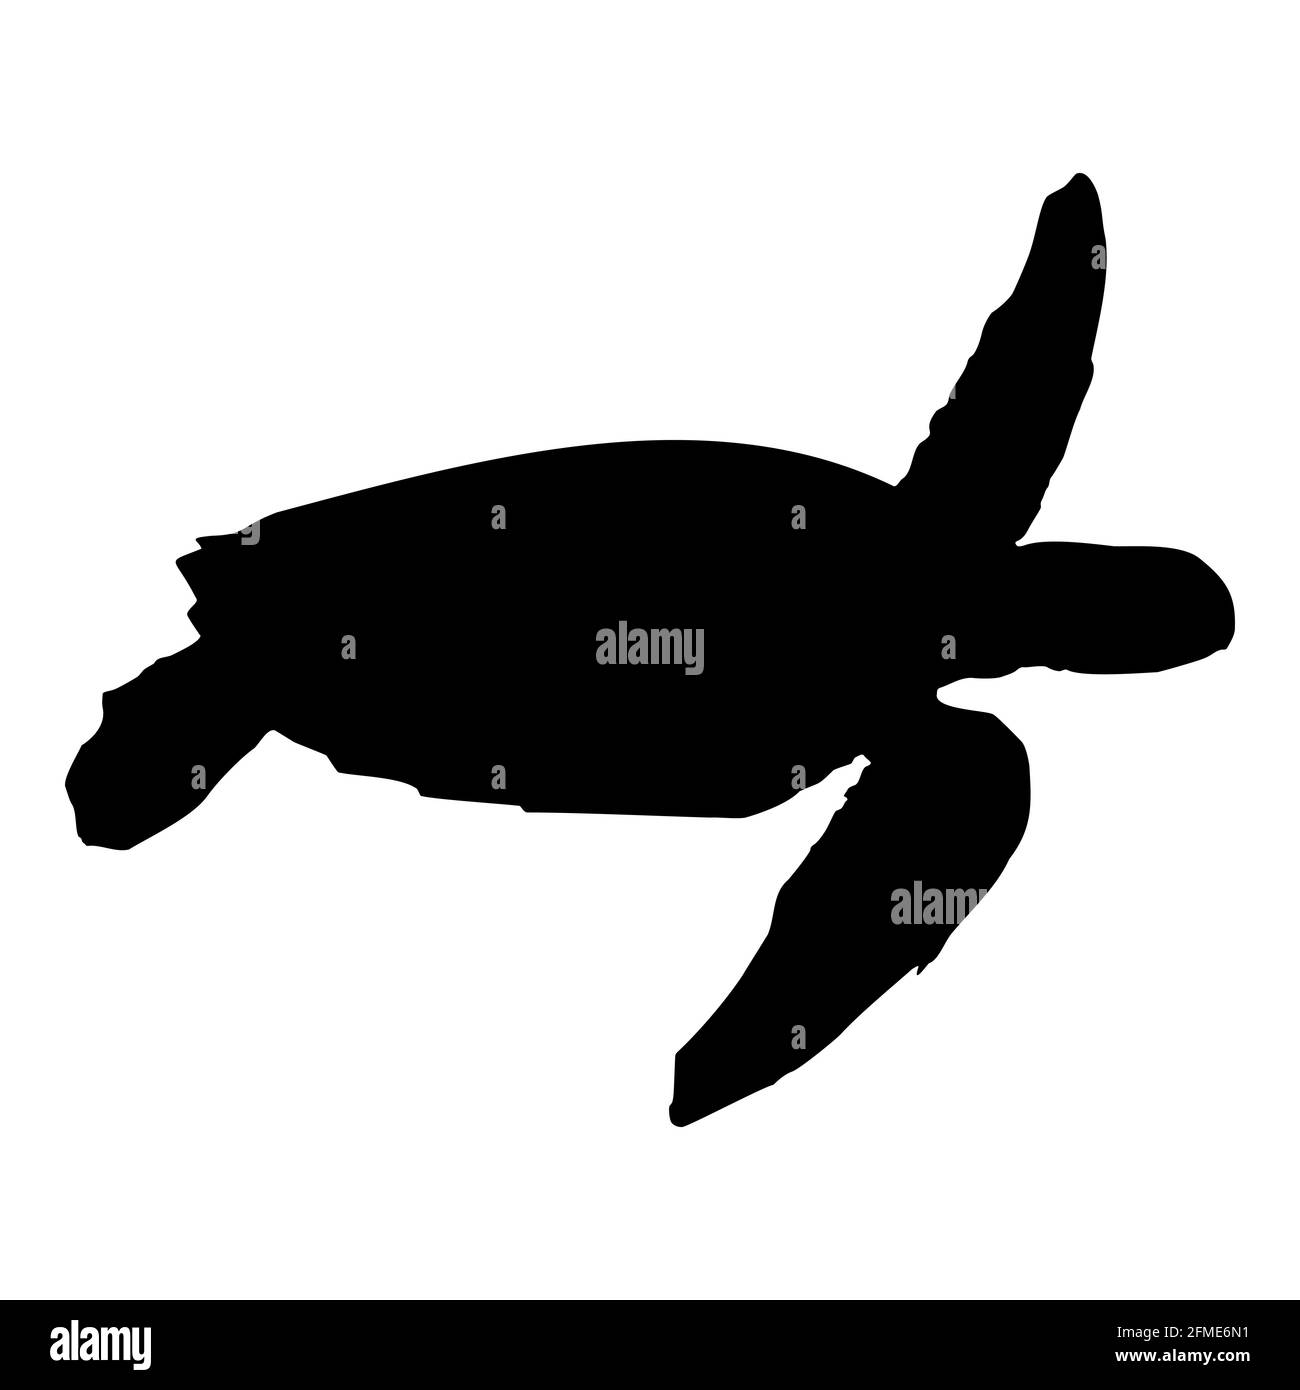 Silhouette isolée noire d'une tortue de mer sur fond blanc. Vue latérale. Vecteur de stock Clipart EPS 10. Chelonia, Eretmochelys, Natator Illustration de Vecteur